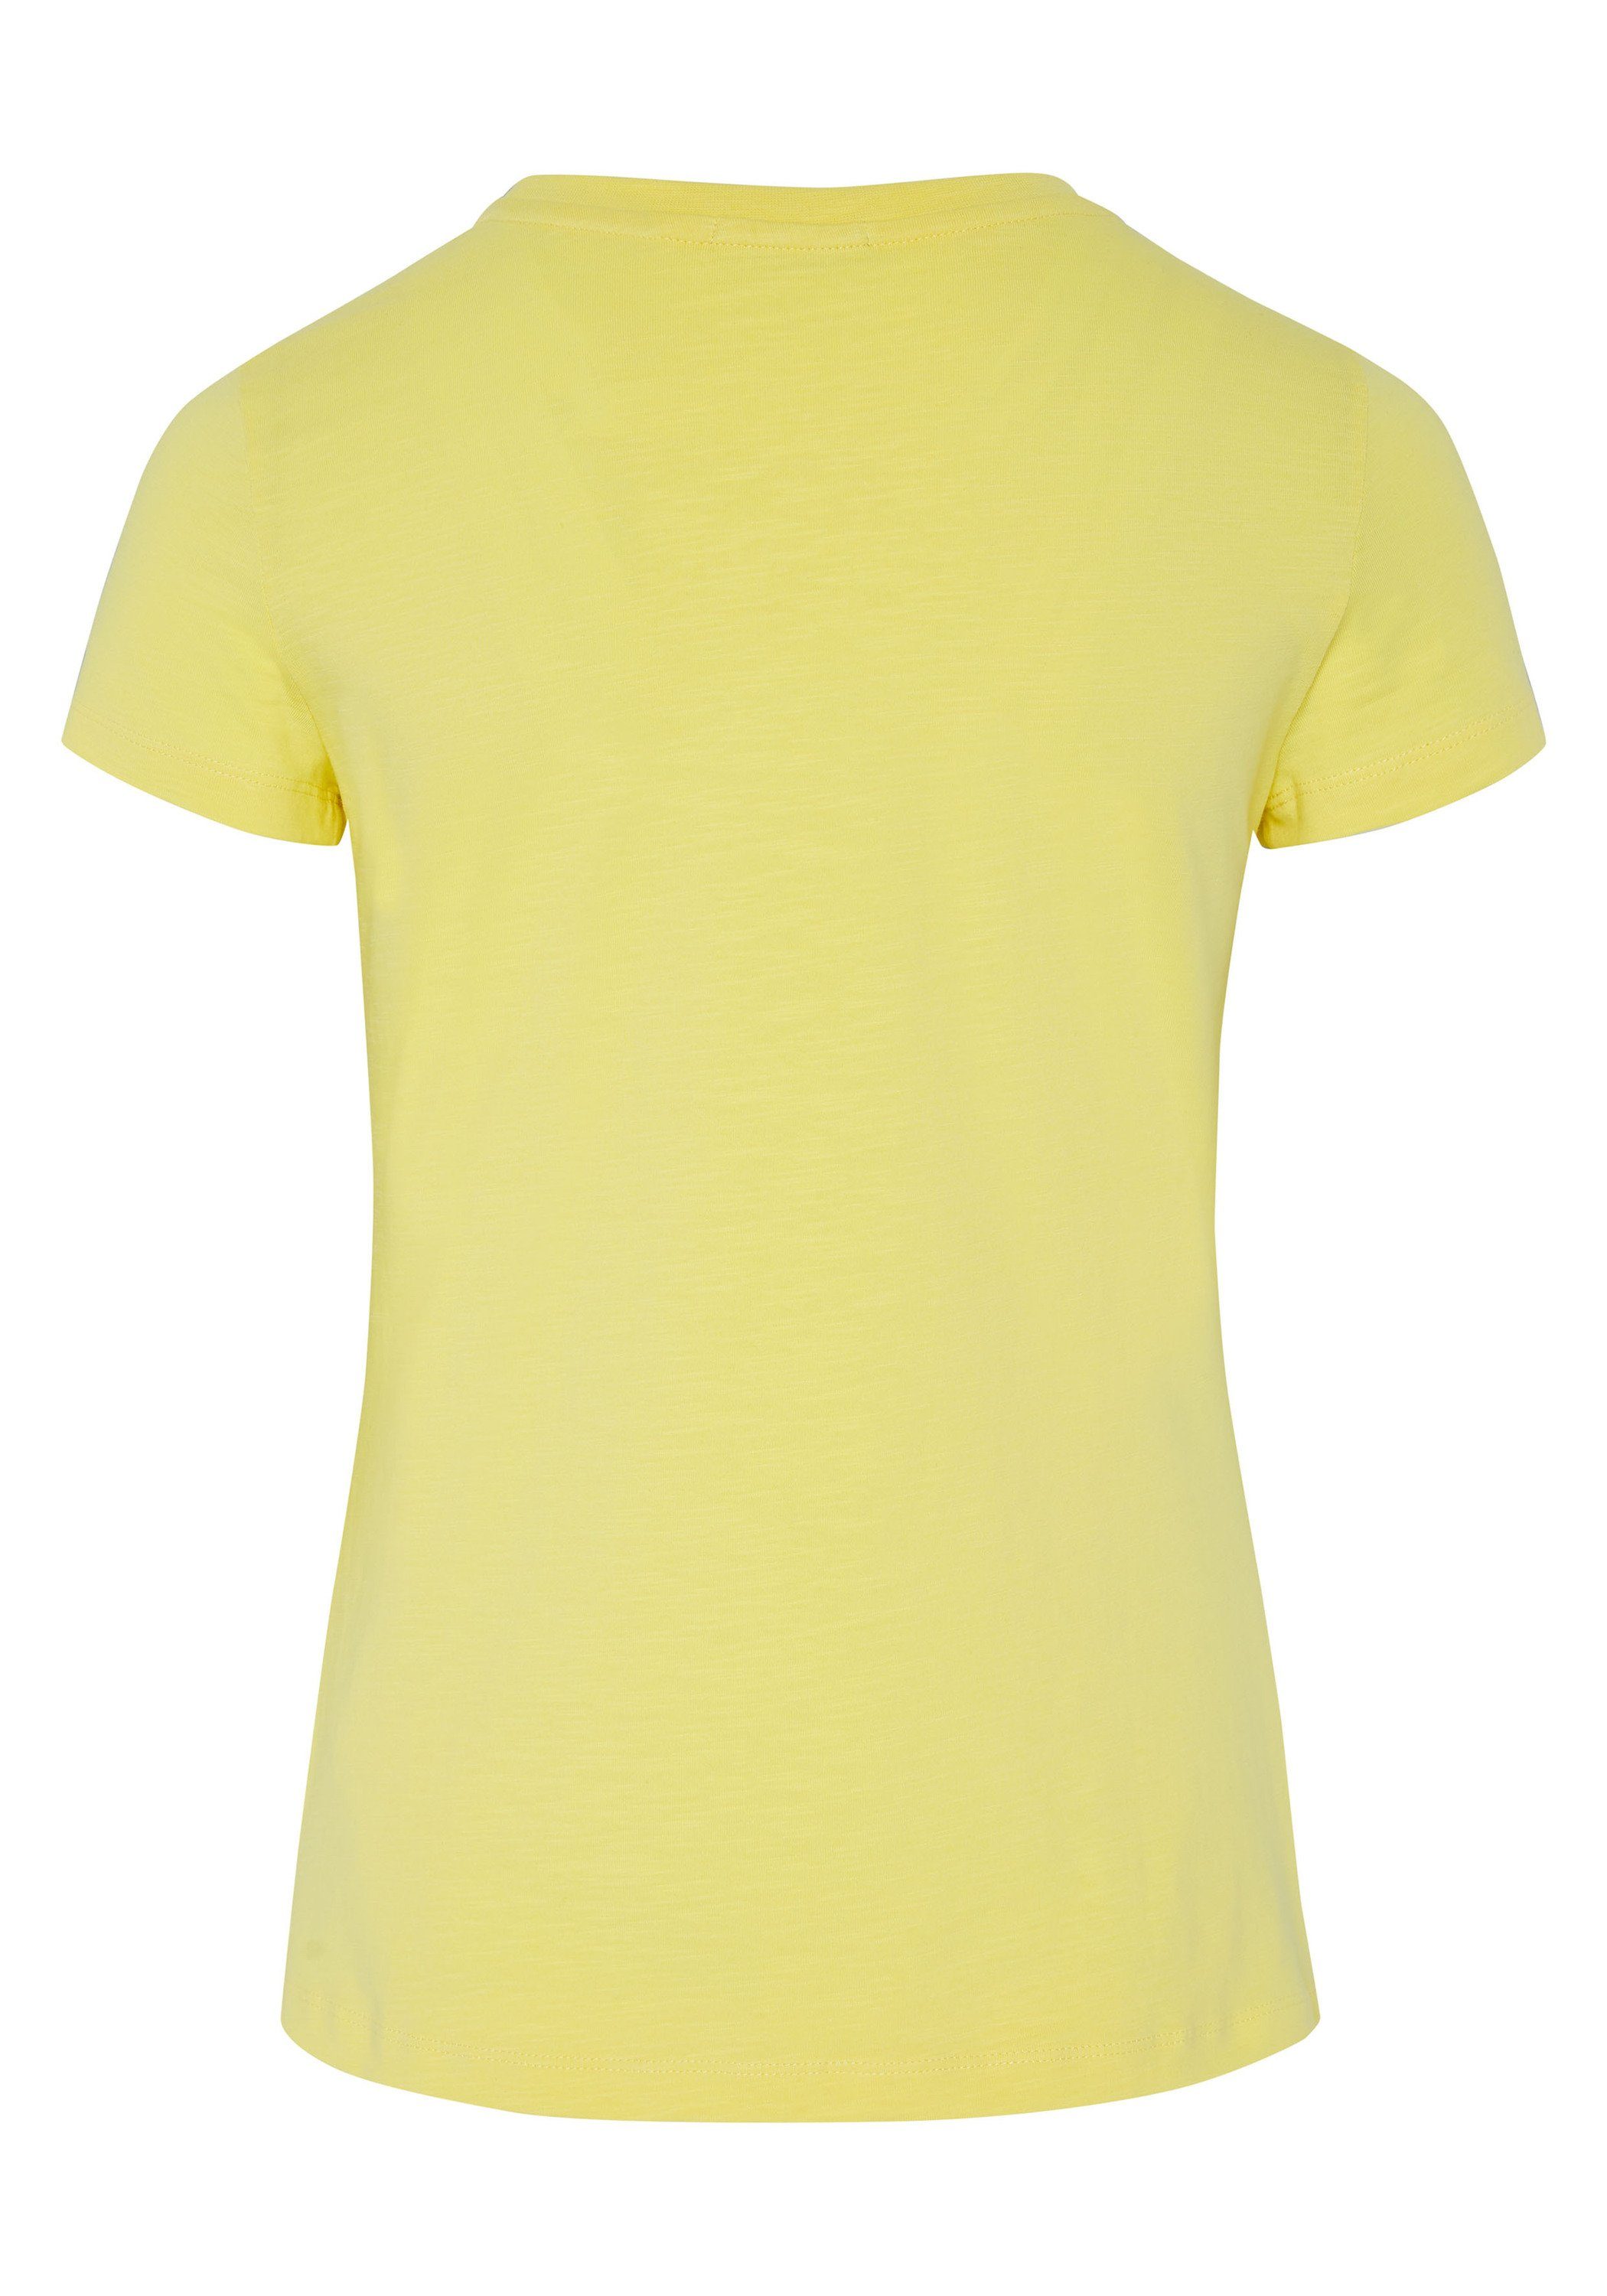 Chiemsee Print-Shirt T-Shirt mit 1 Limelight Jumper-Frontprint